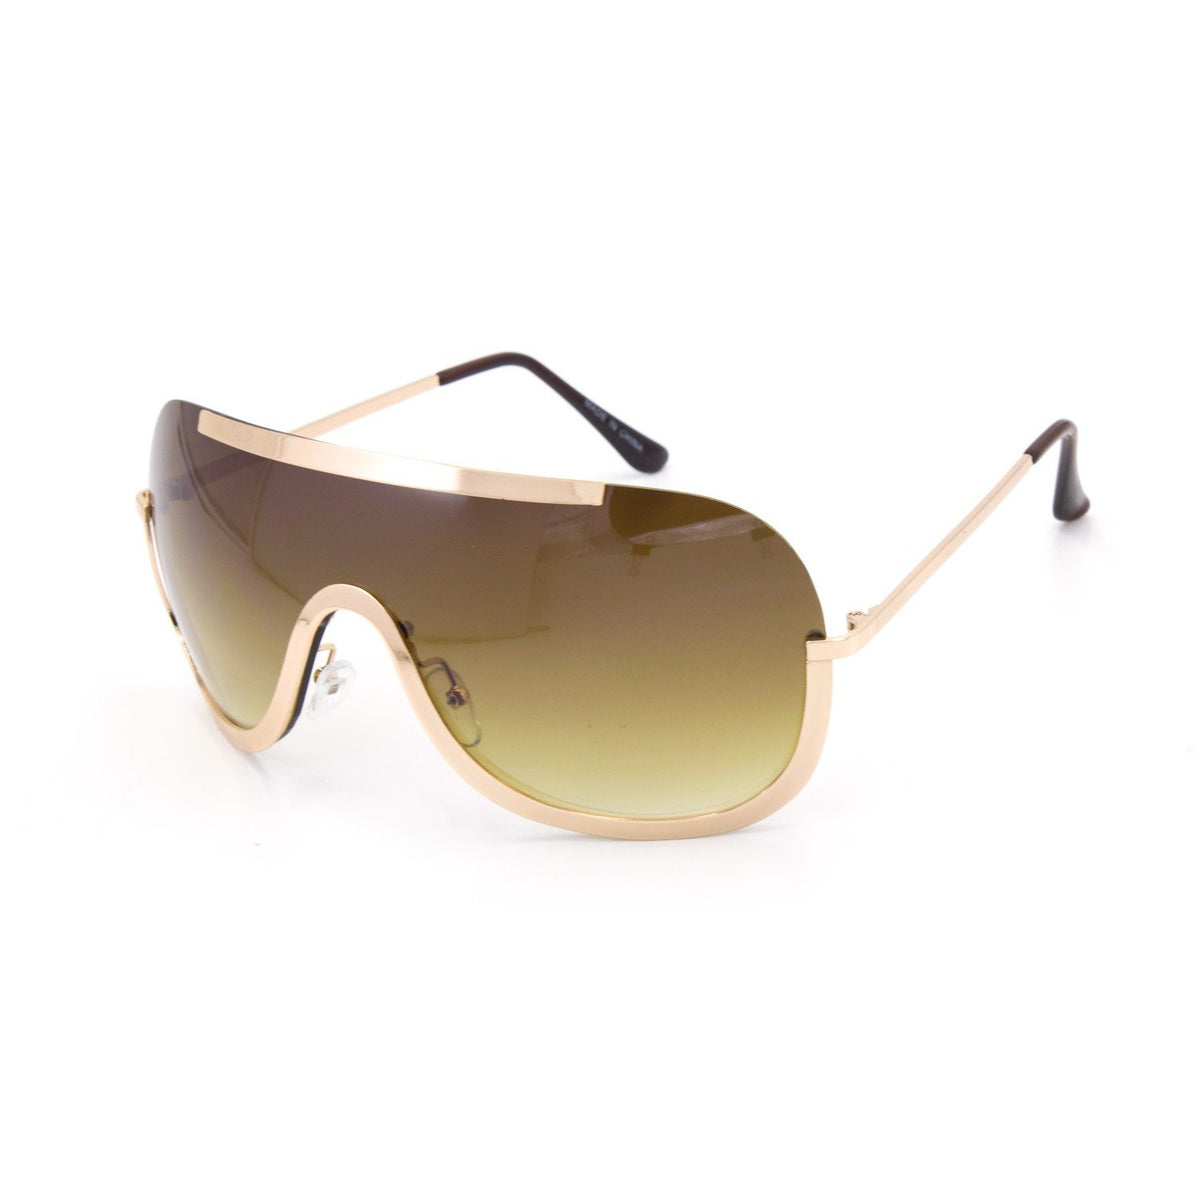 Joselyn Sunglasses - Final Sale